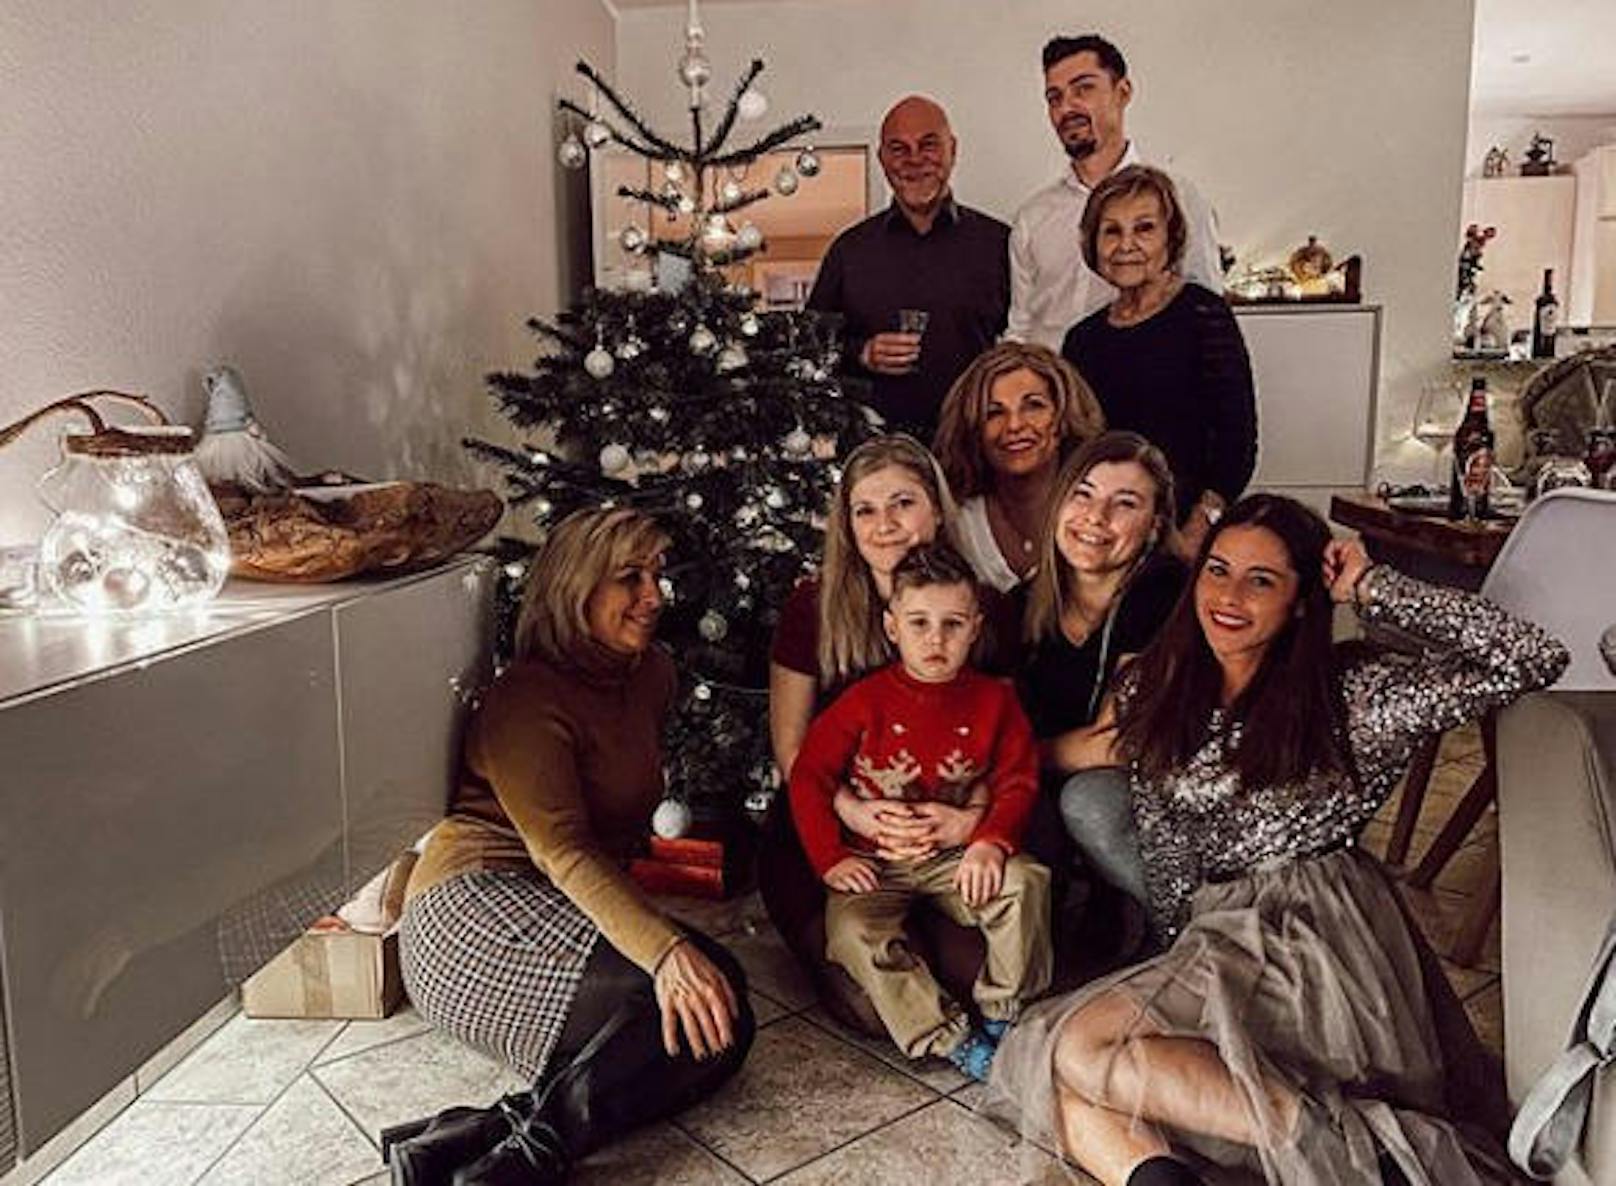 26.12.2019: Ausgerechnet zu Weihnachten schmollt der kleine Alessio. Doch was ist der Grund: Zu wenig Geschenke? Keine Lust aufs Foto? Oder ist er traurig, weil Papa Pietro nicht da ist? Mama Sarah schweigt.